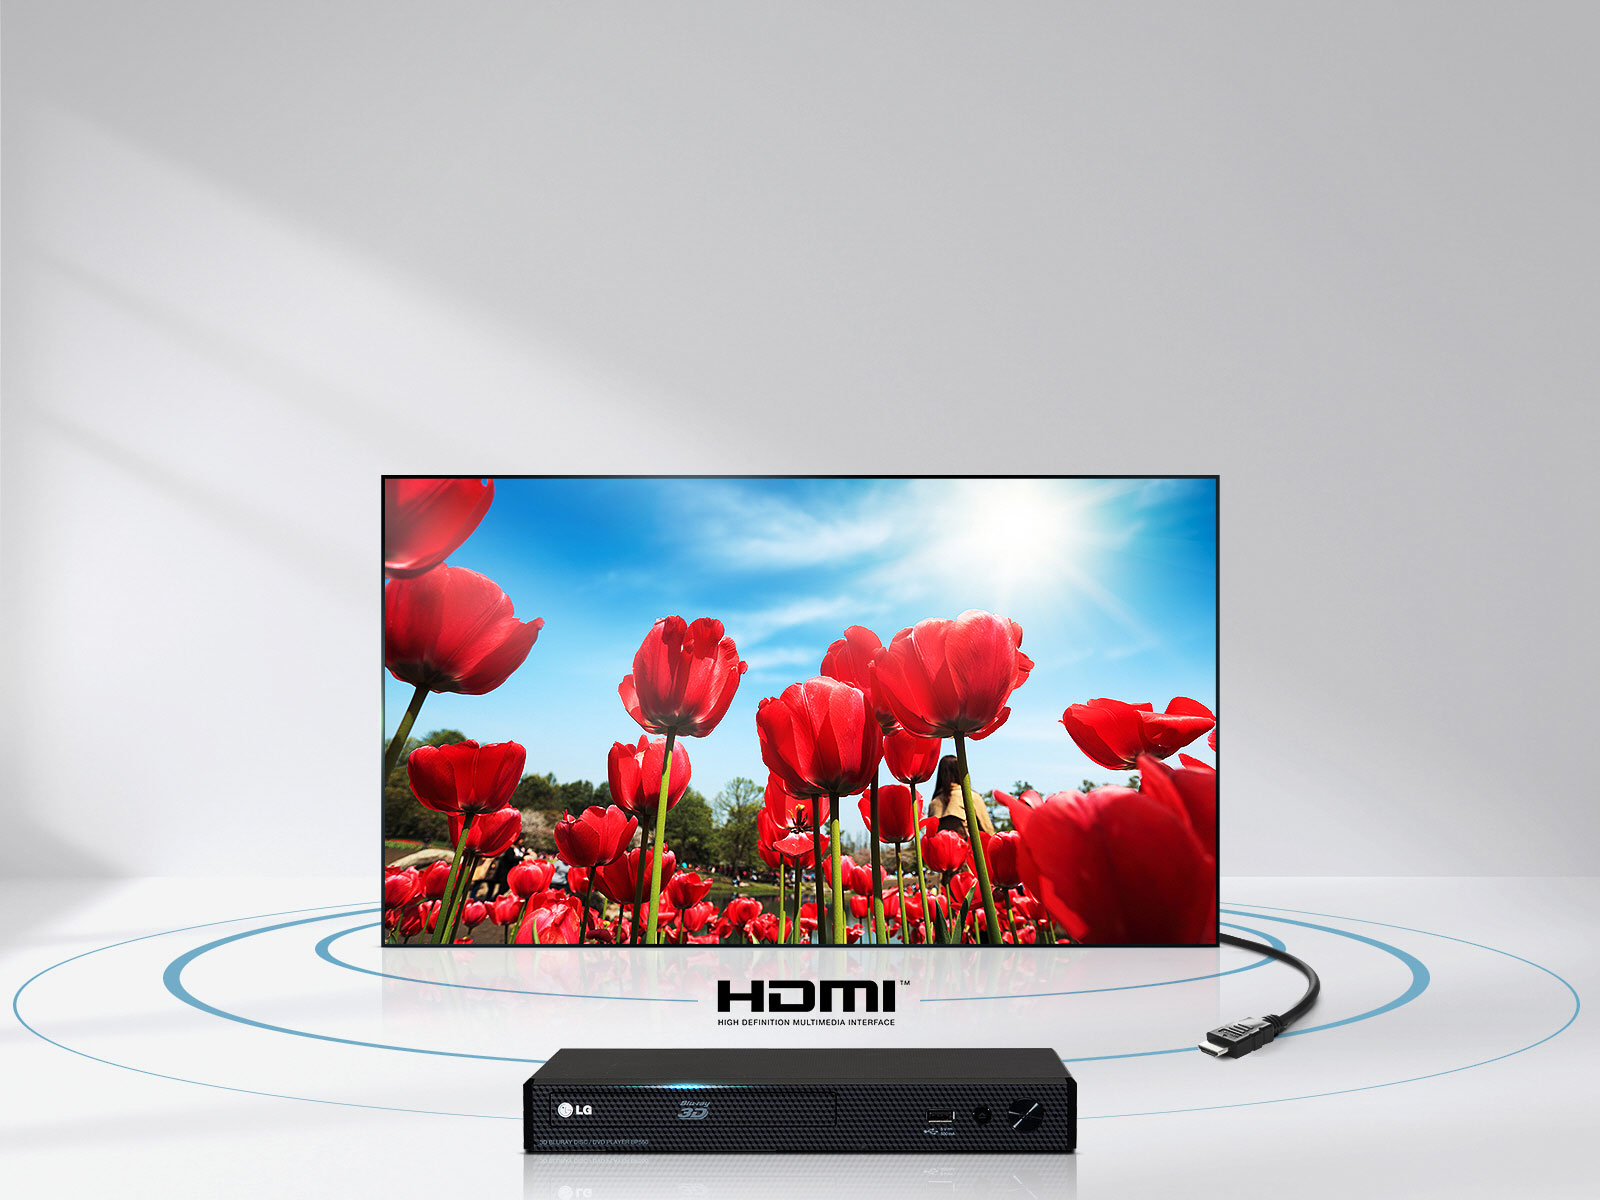 لذت بردن از کیفیت بالای صدا و تصویر با کابل HDMI